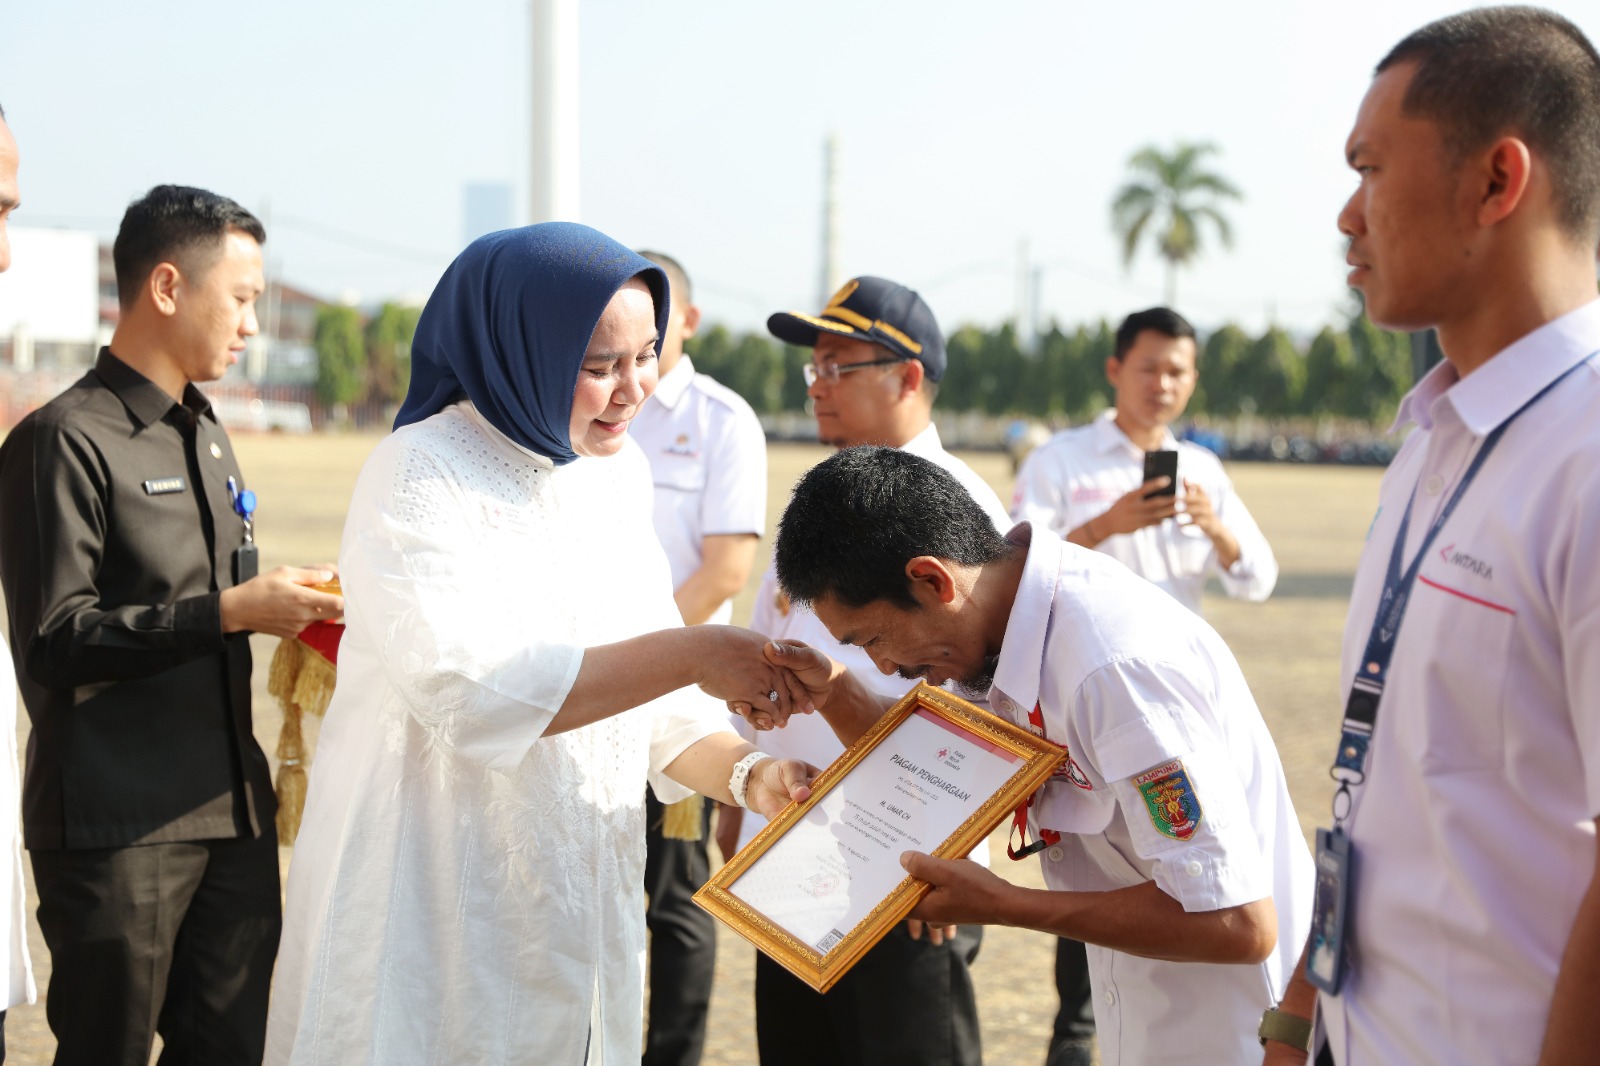 Riana Sari Arinal Tandatangani Perjanjian Kerjasama PMI dengan Dinas Pendidikan dan Kebudayaan Provinsi Lampung dalam Pengembangan Kepalangmerahan dan Kesiapsiagaan Bencana